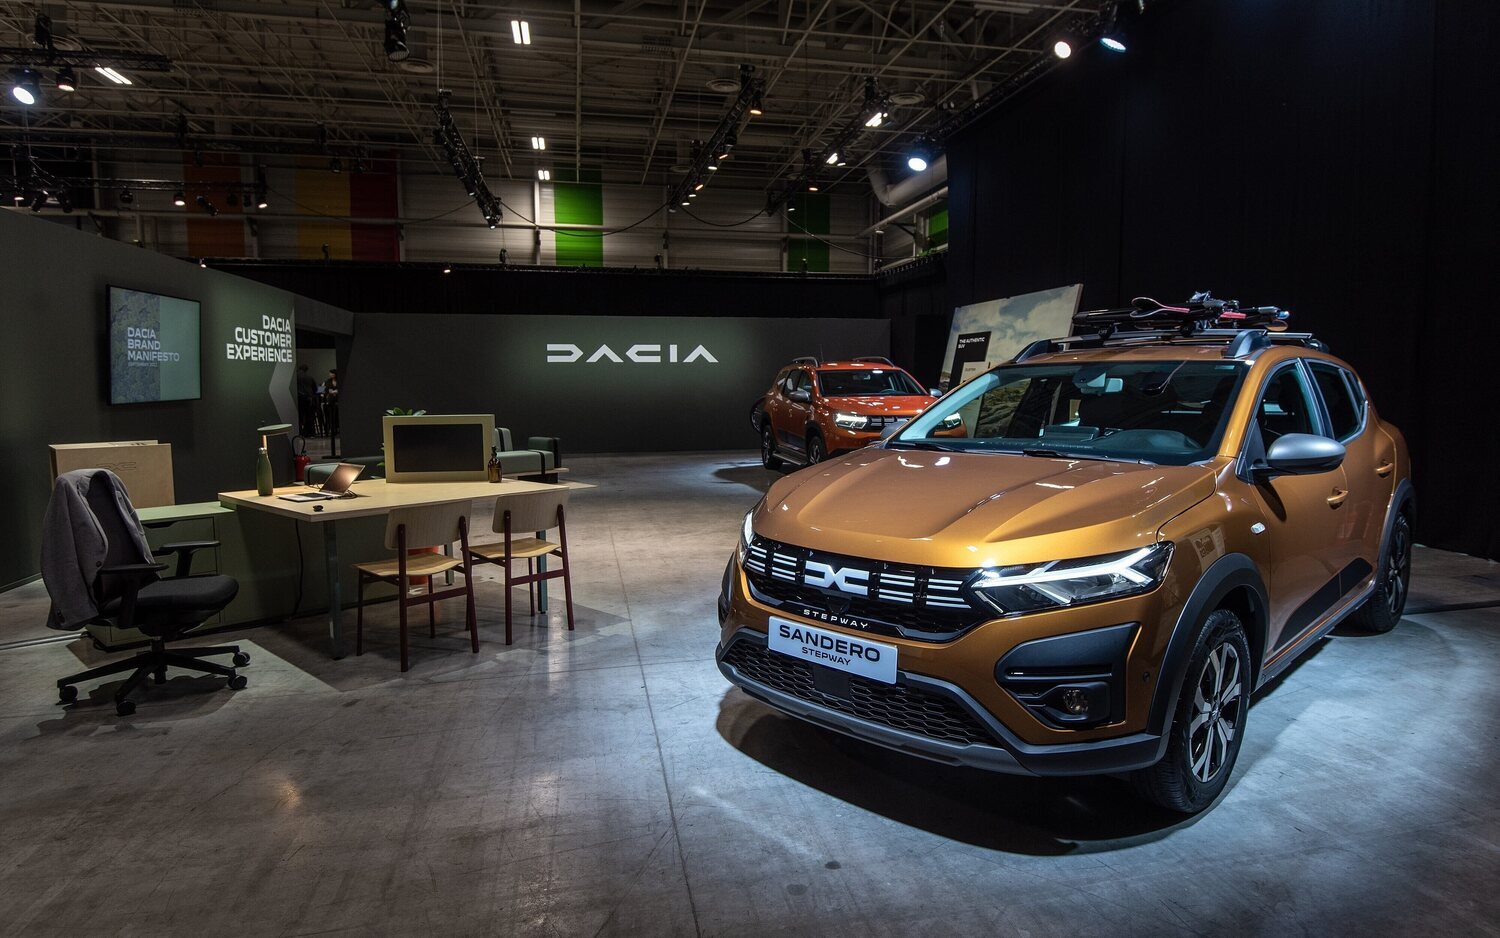 Dacia se prepara para el final de su profunda renovación